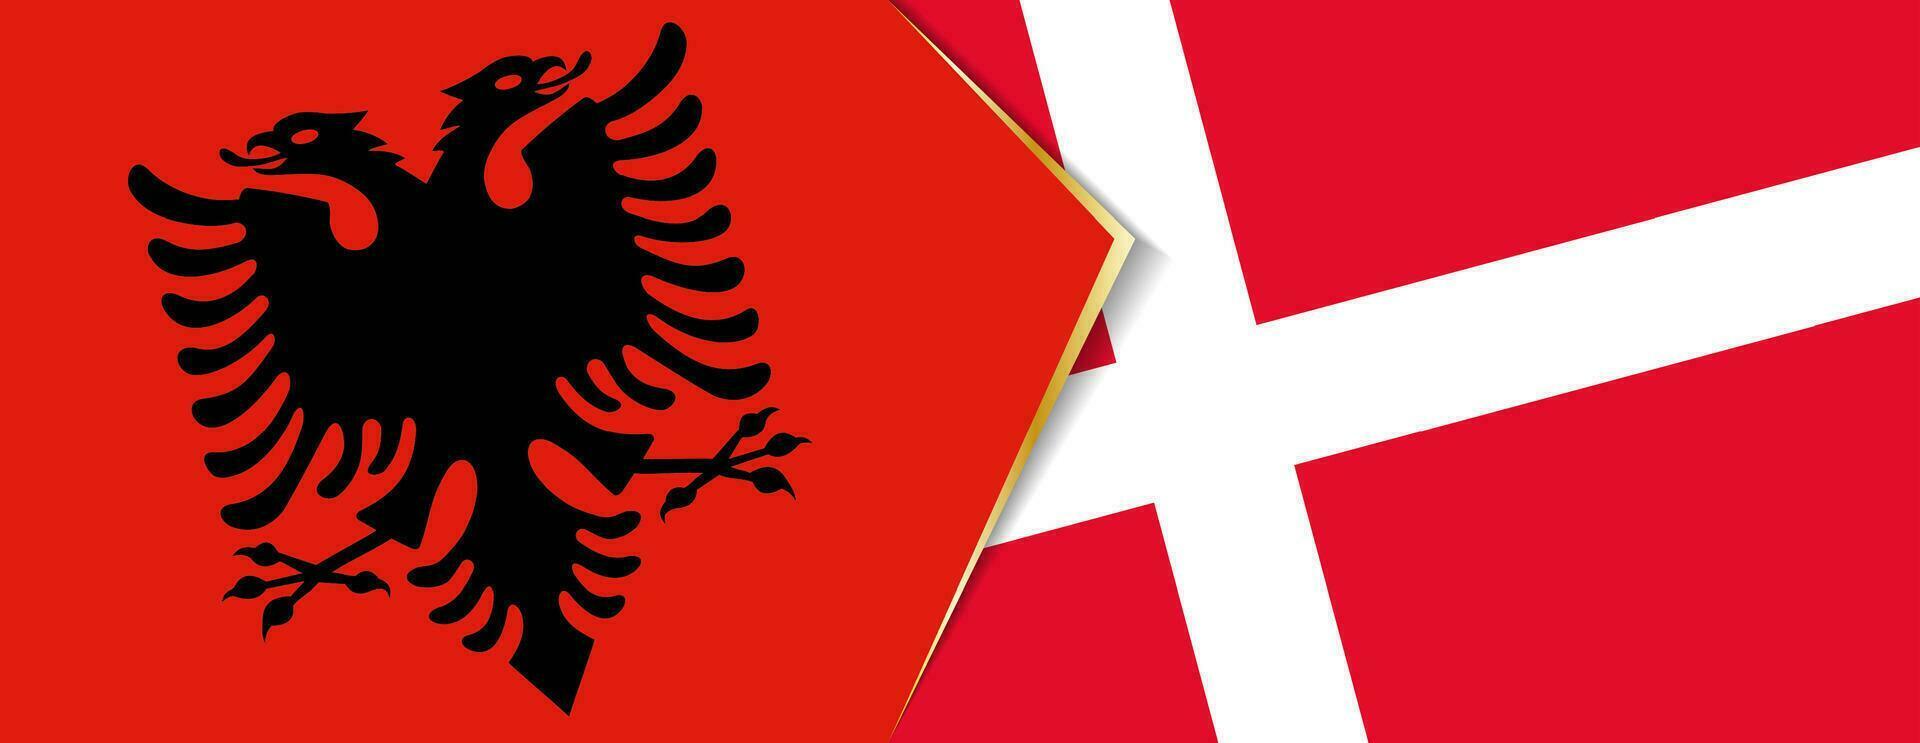 albania och Danmark flaggor, två vektor flaggor.